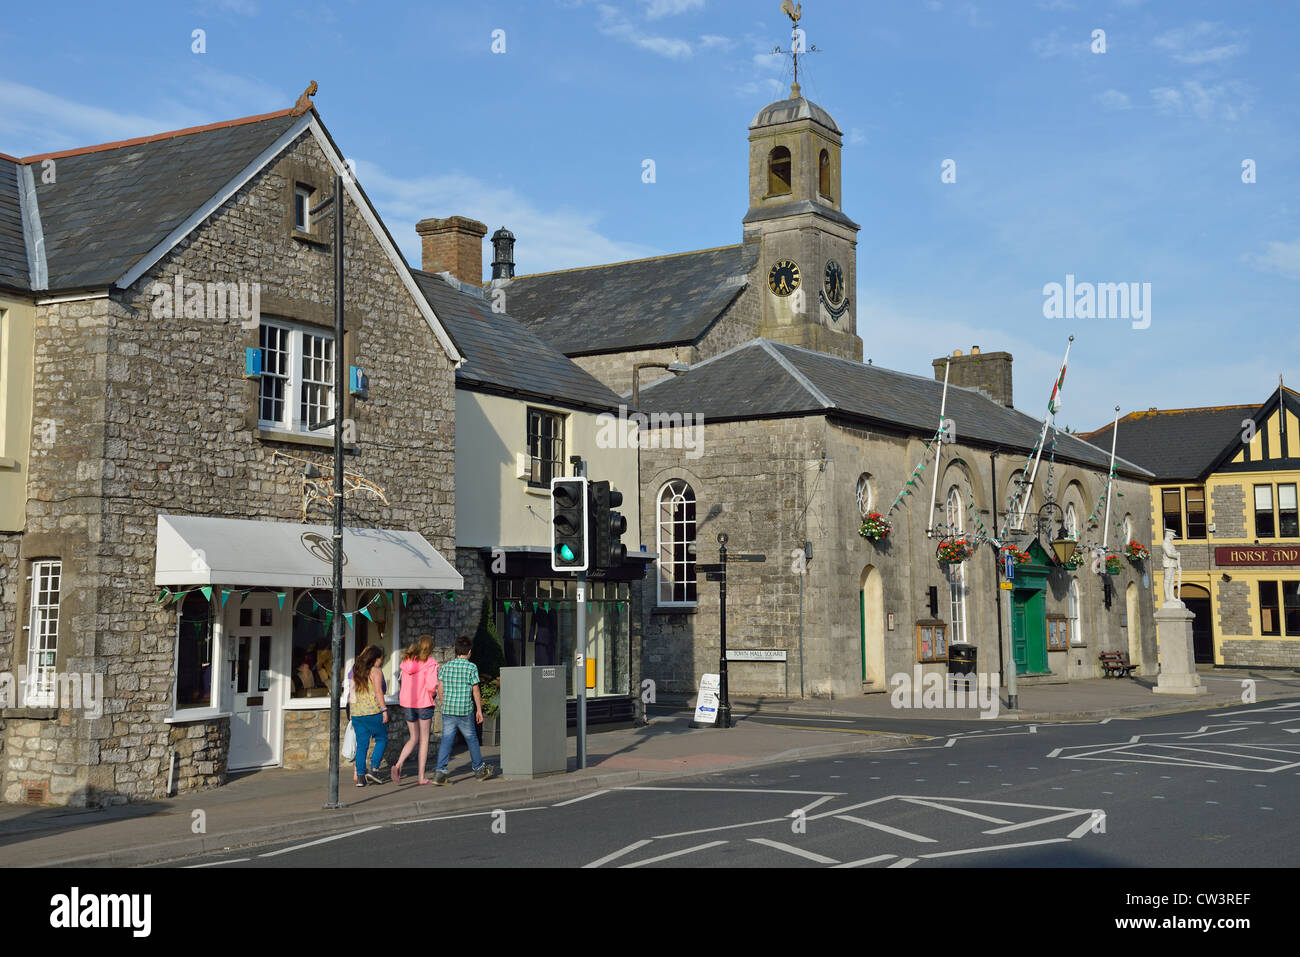 Hôtel de ville, High Street, Cowbridge (y Bont-faen), Vale de Glamourgan (Bro Morgangwg), pays de Galles (Cymru), Royaume-Uni Banque D'Images